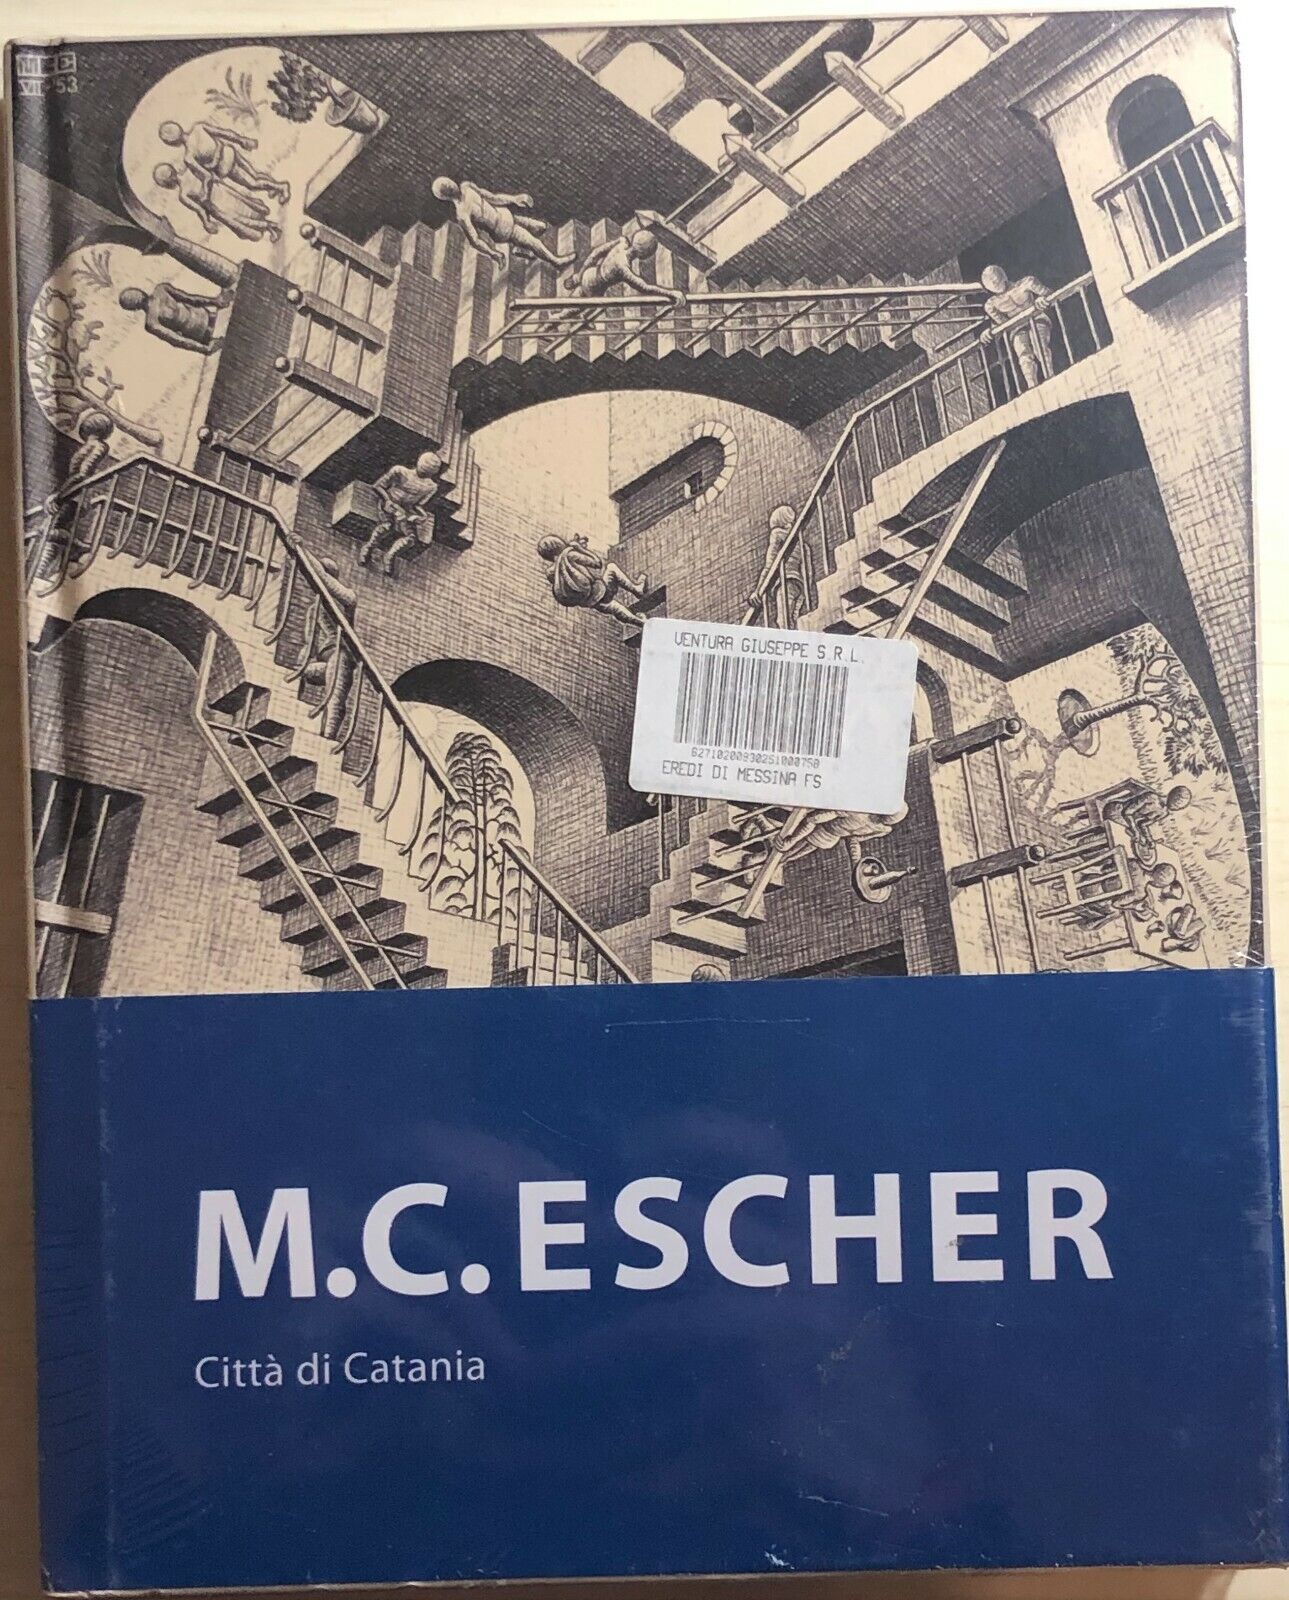 M.C. Escher - Citt? di Catania di Aa.vv., 2017, Maurits